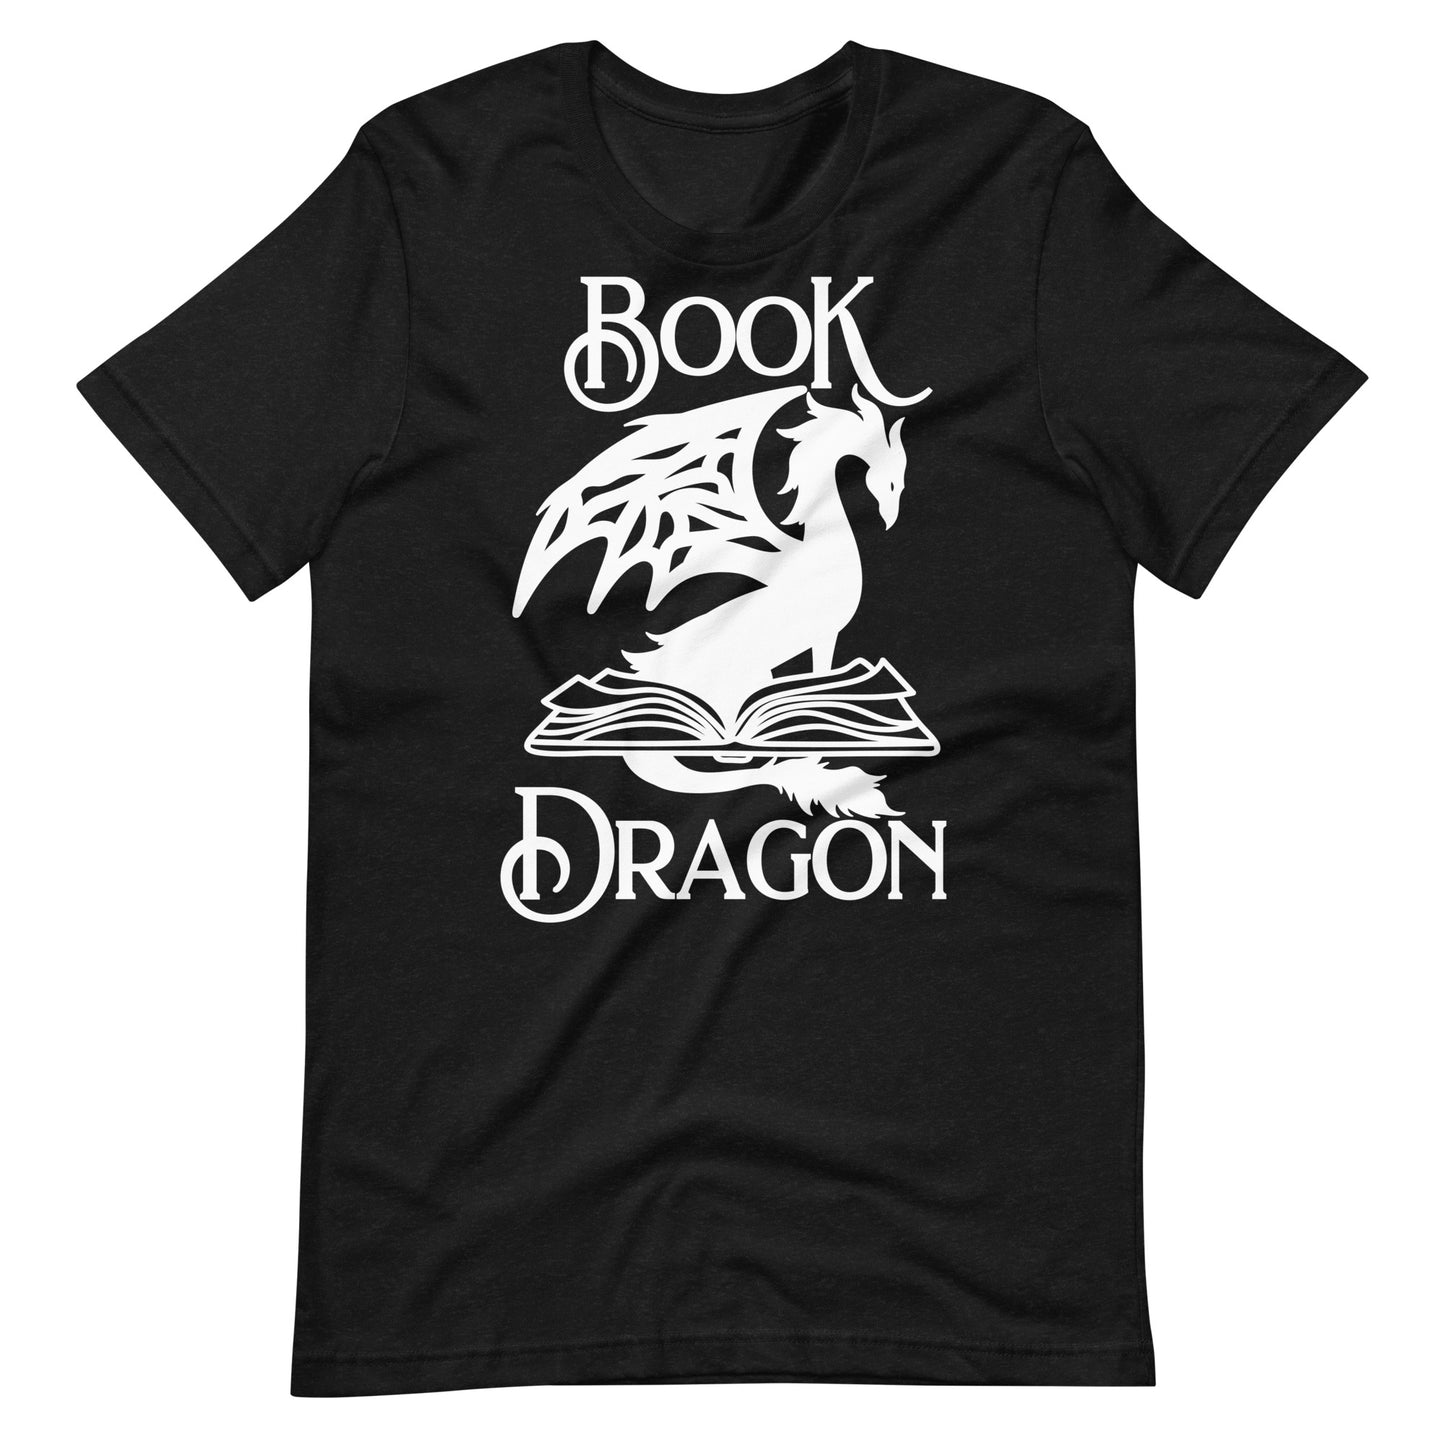 Book Dragon Unisex t-shirt for FireDrake Artistry